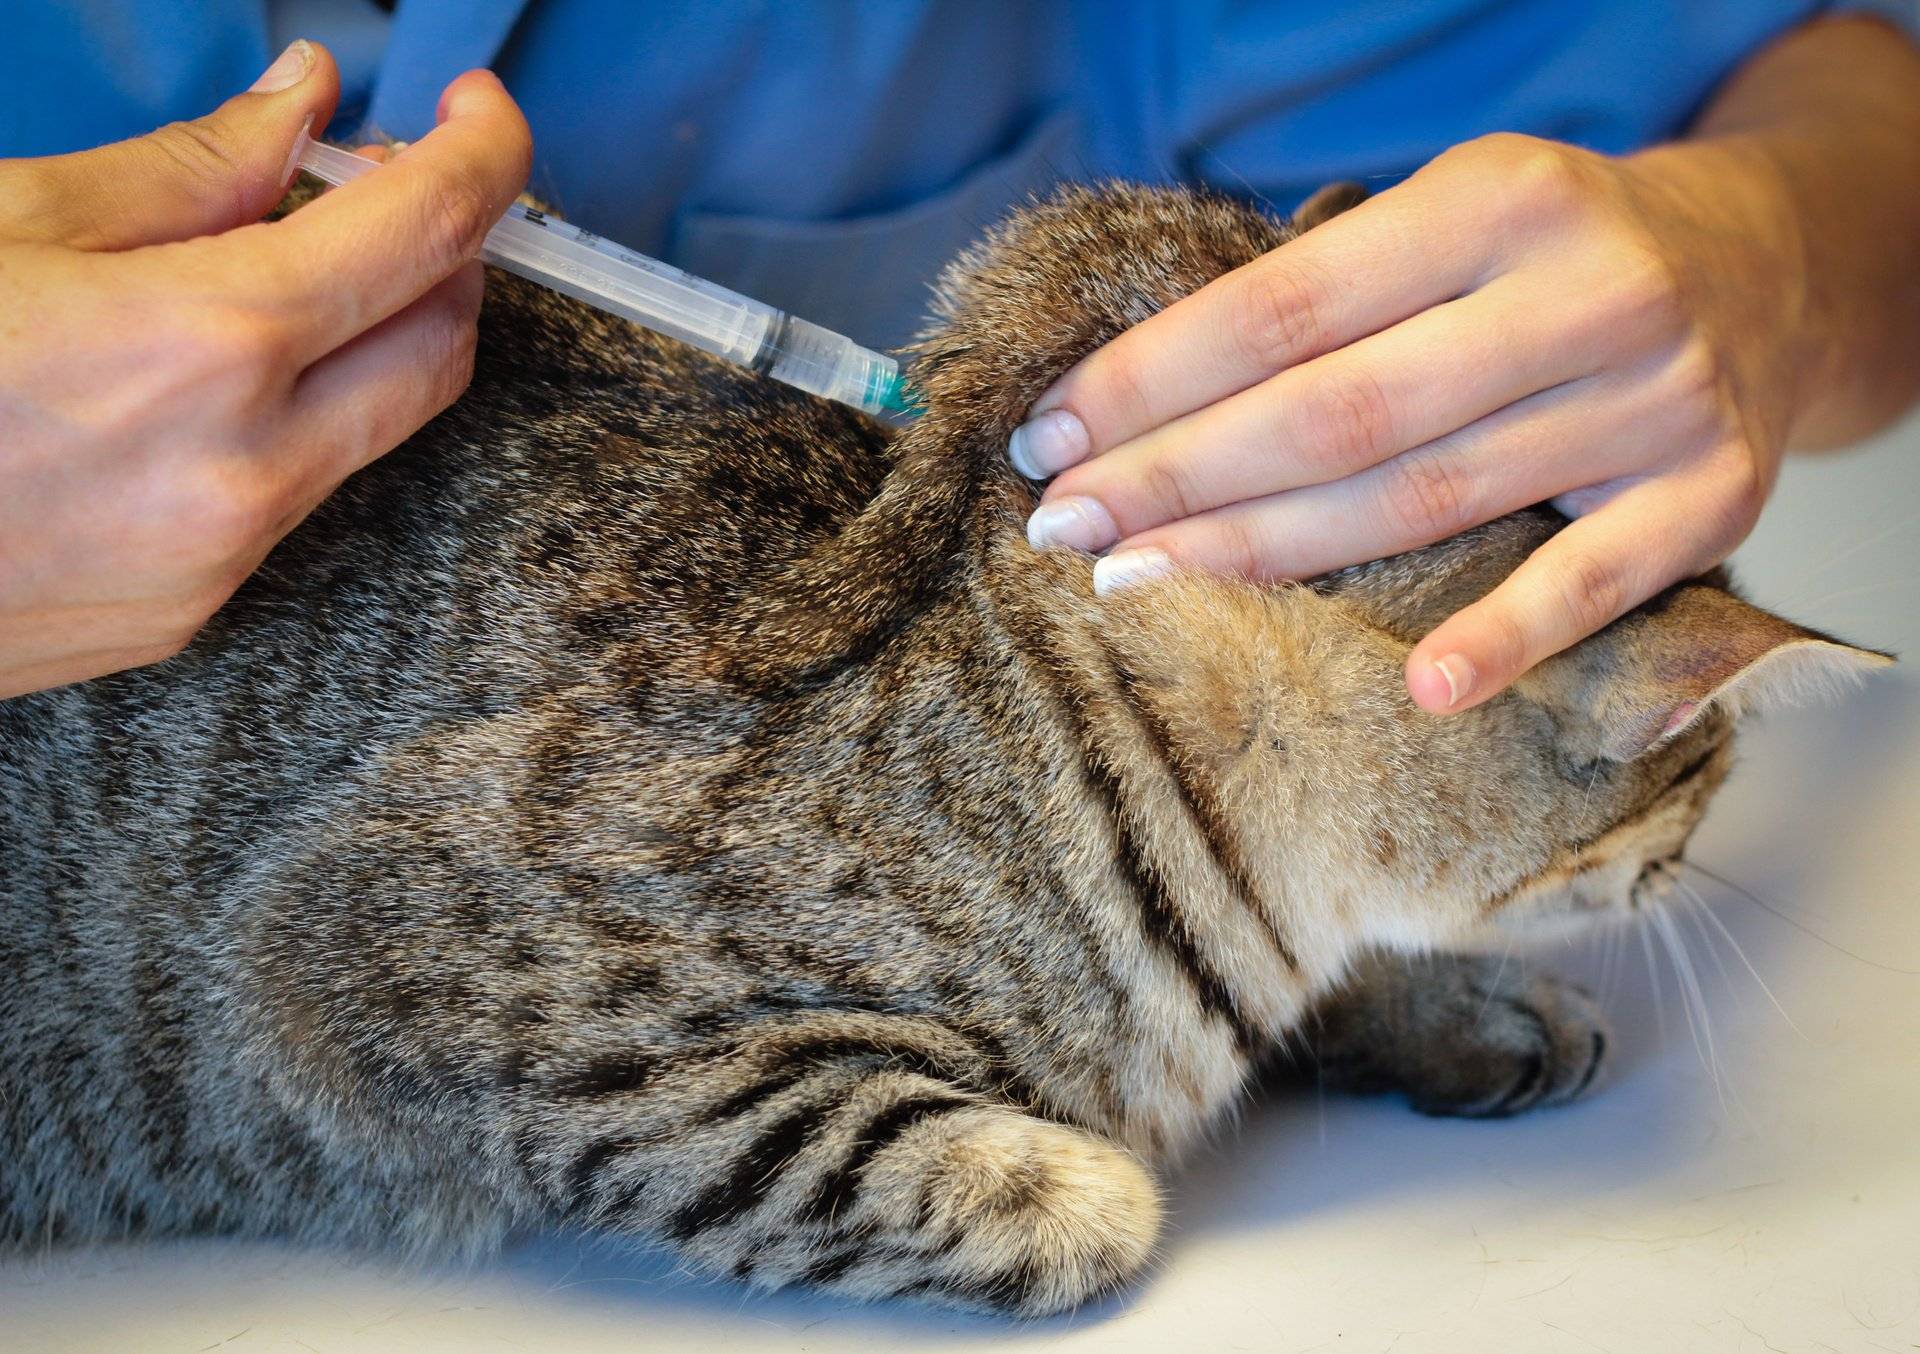 Сыворотка для иммунитета кошкам